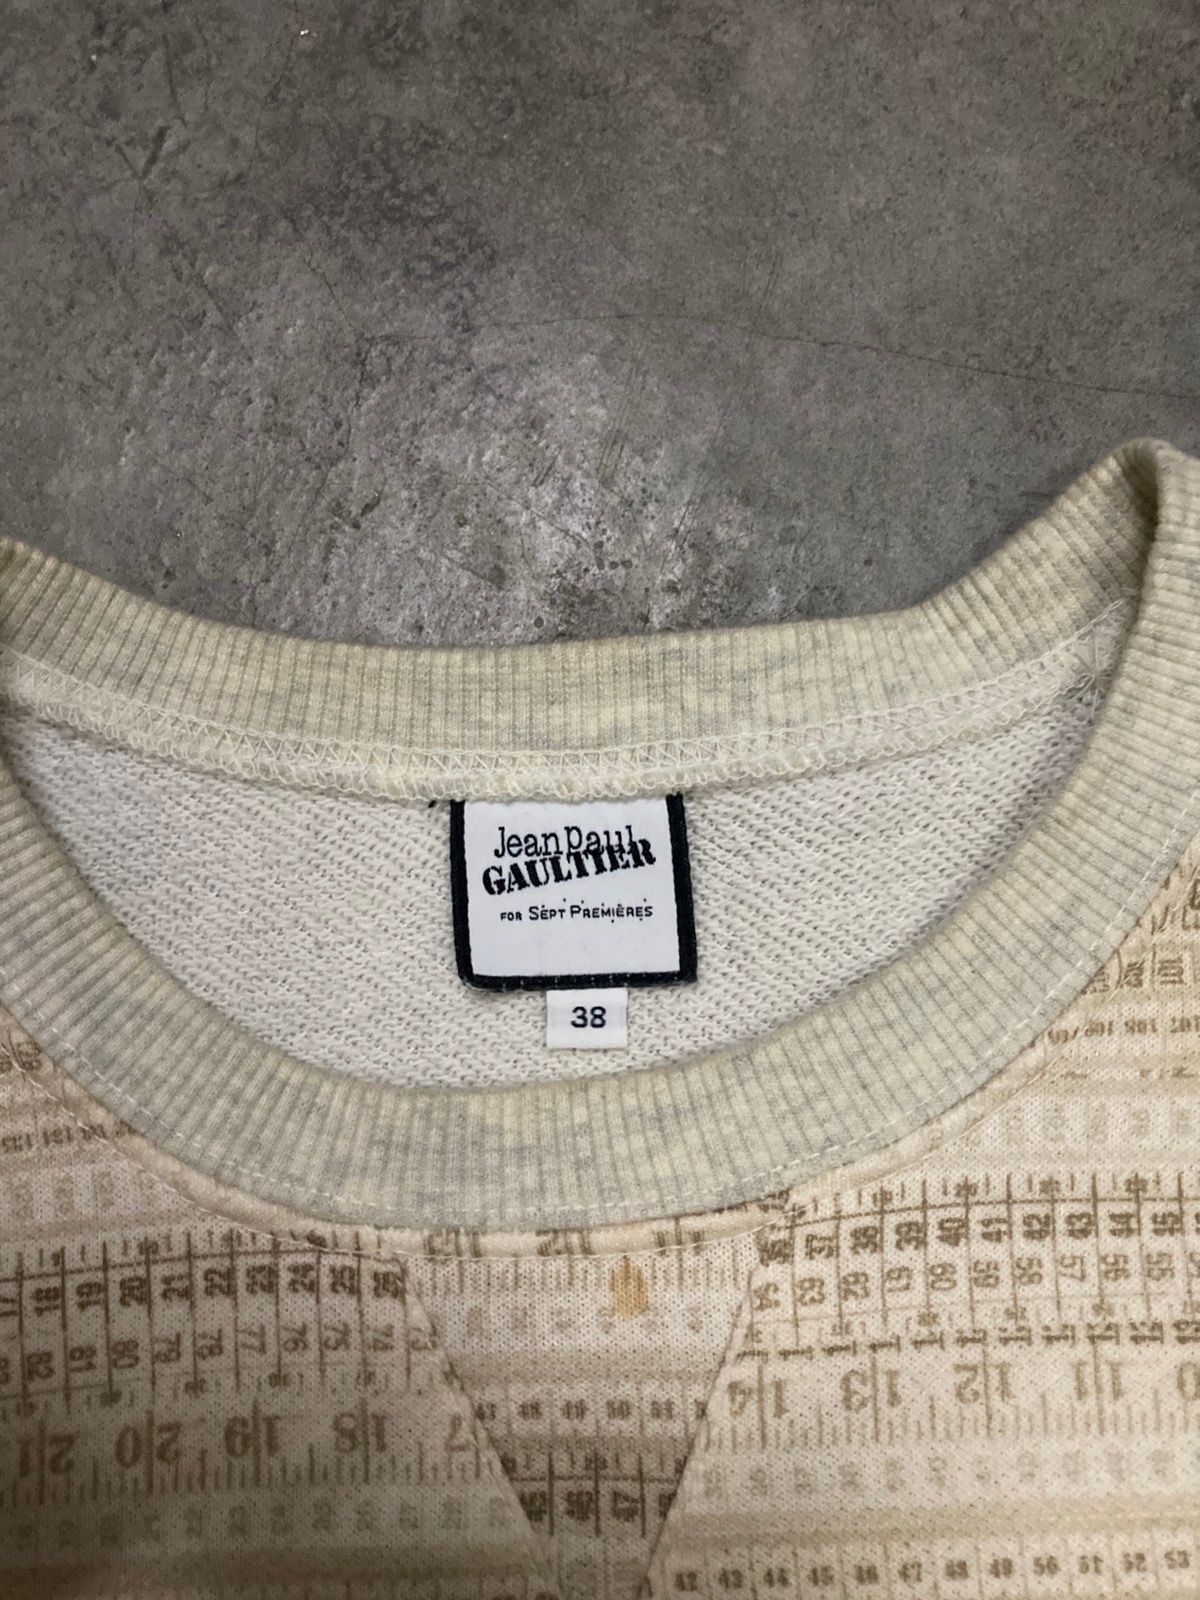 Jean Paul Gaultier for Sept Premieres Sweatshirt - 7